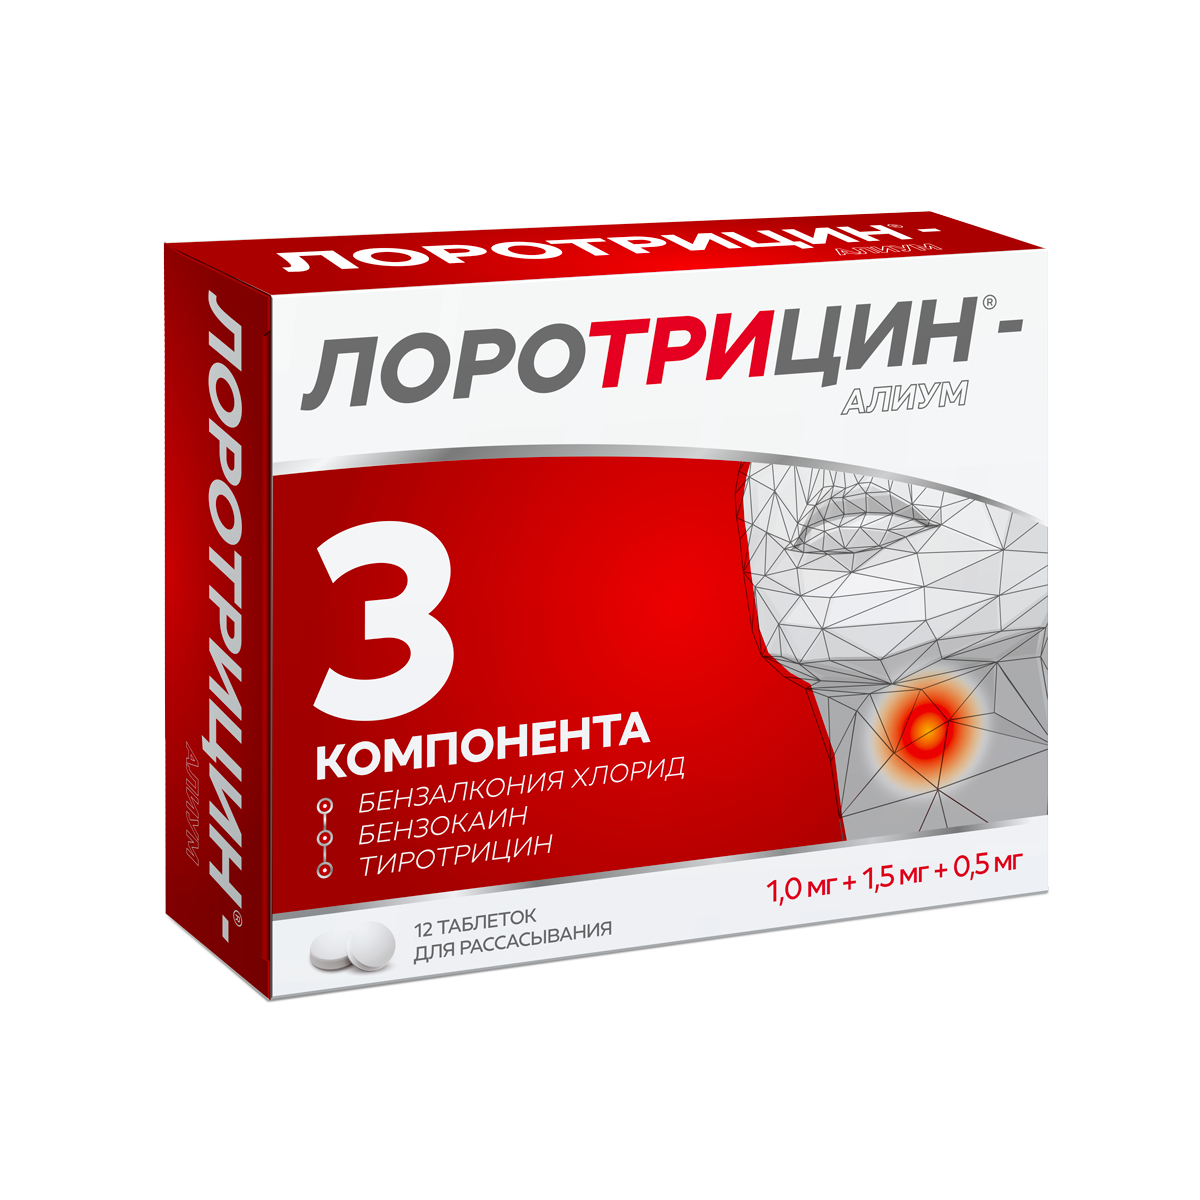 Лоротрицин-Алиум тб для рассасывания № 12